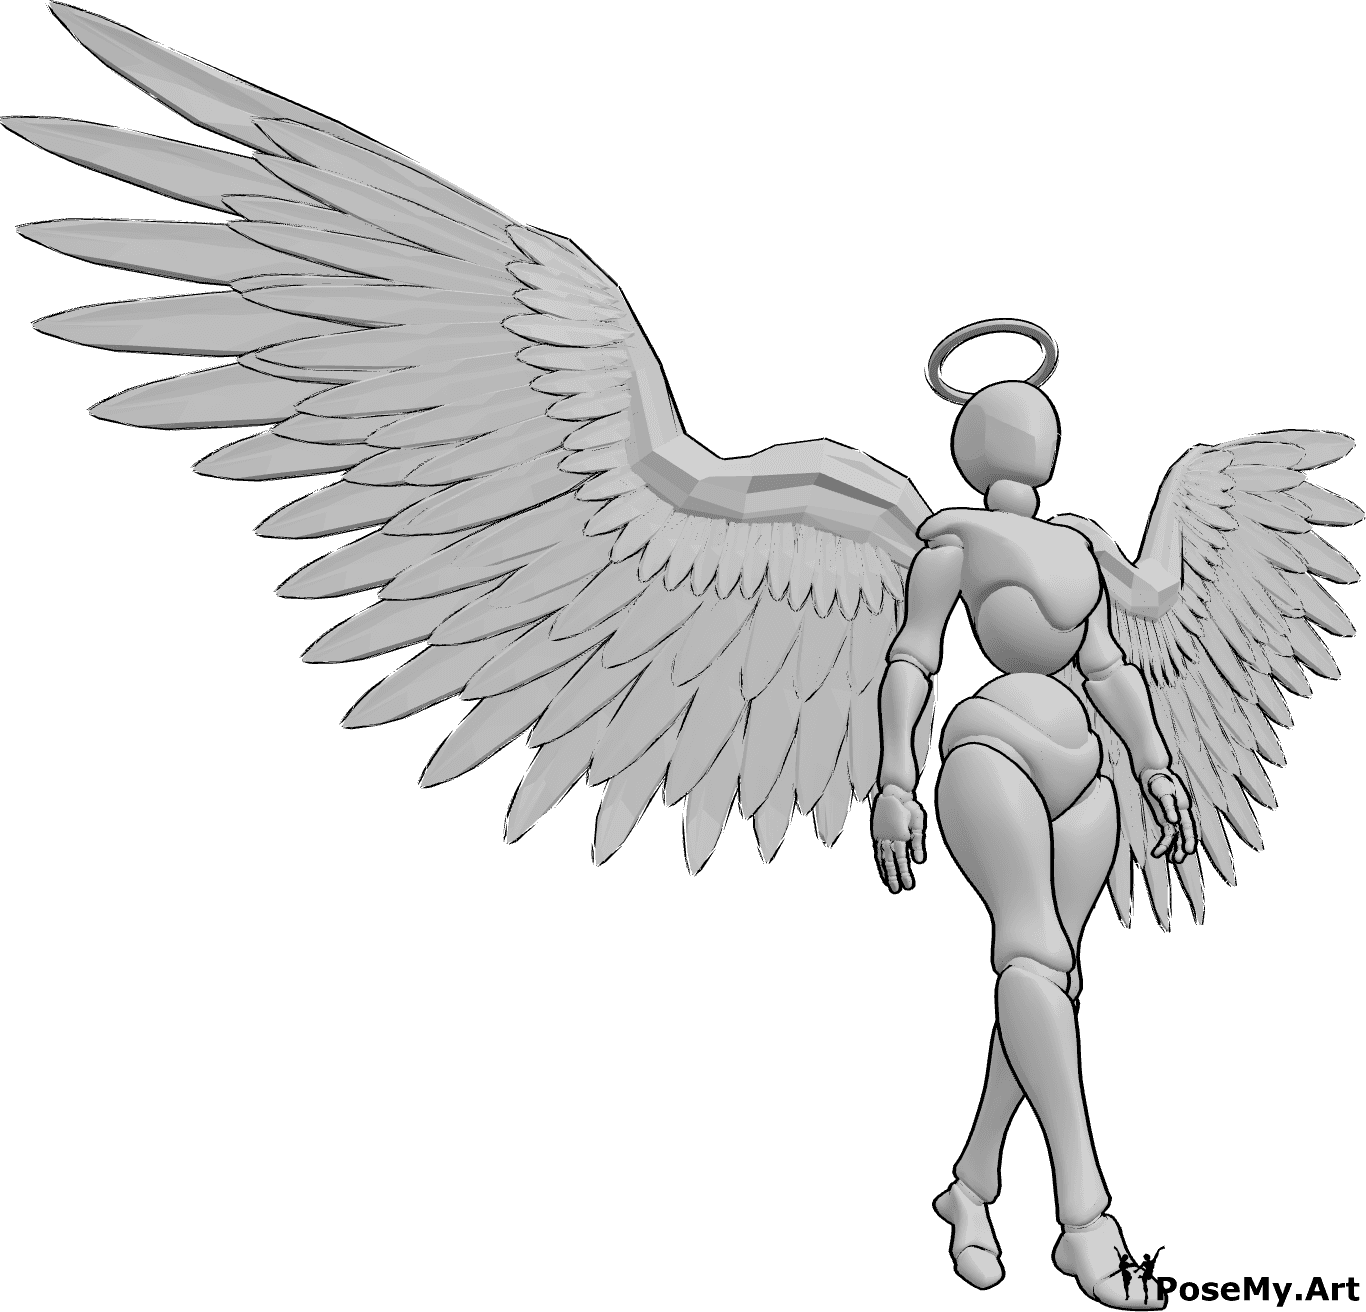 Posen-Referenz- Weiblicher Engel in Geh-Pose - Weiblicher Engel geht langsam mit geöffneten Flügeln und schaut nach vorne